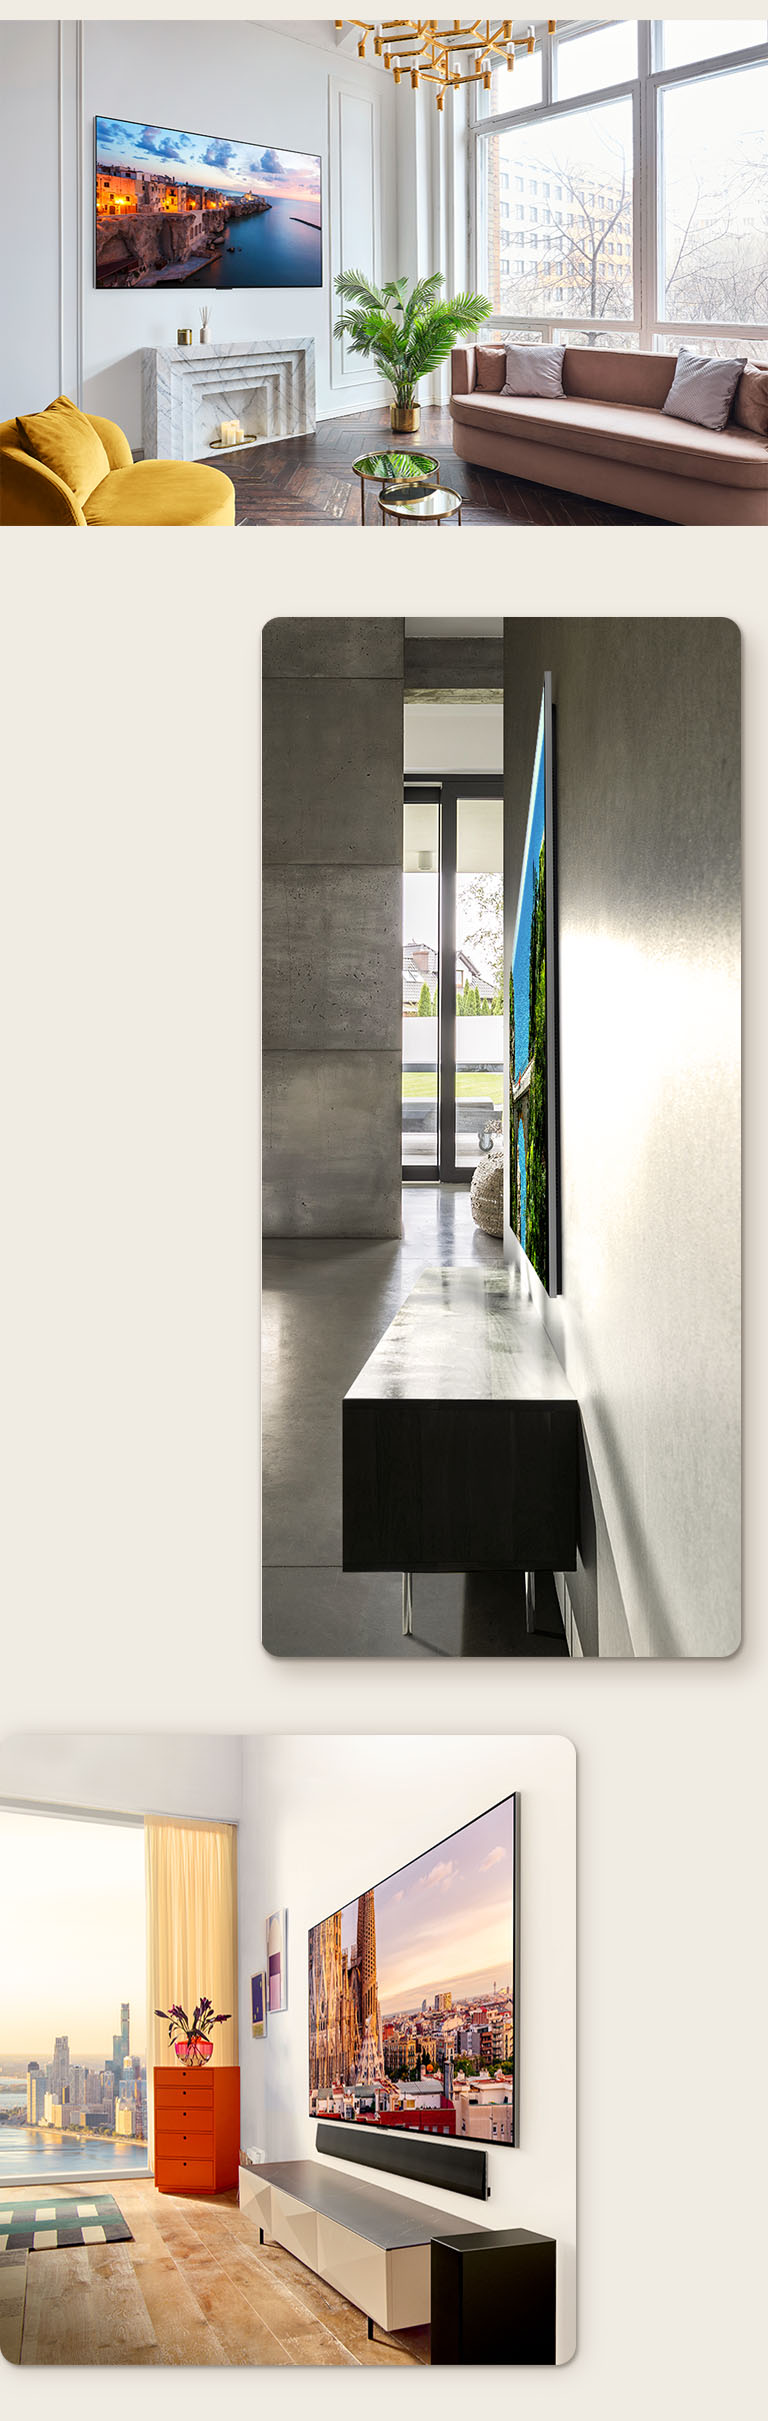 Un'immagine di LG OLED G3 sulla parete di una stanza decorata che presenta il suo One Wall Design. Una vista laterale delle dimensioni incredibilmente sottili di LG OLED G3. Una vista di lato dell'LG OLED G3 sulla parete di un appartamento con vista sulla città e una Soundbar sottostante.